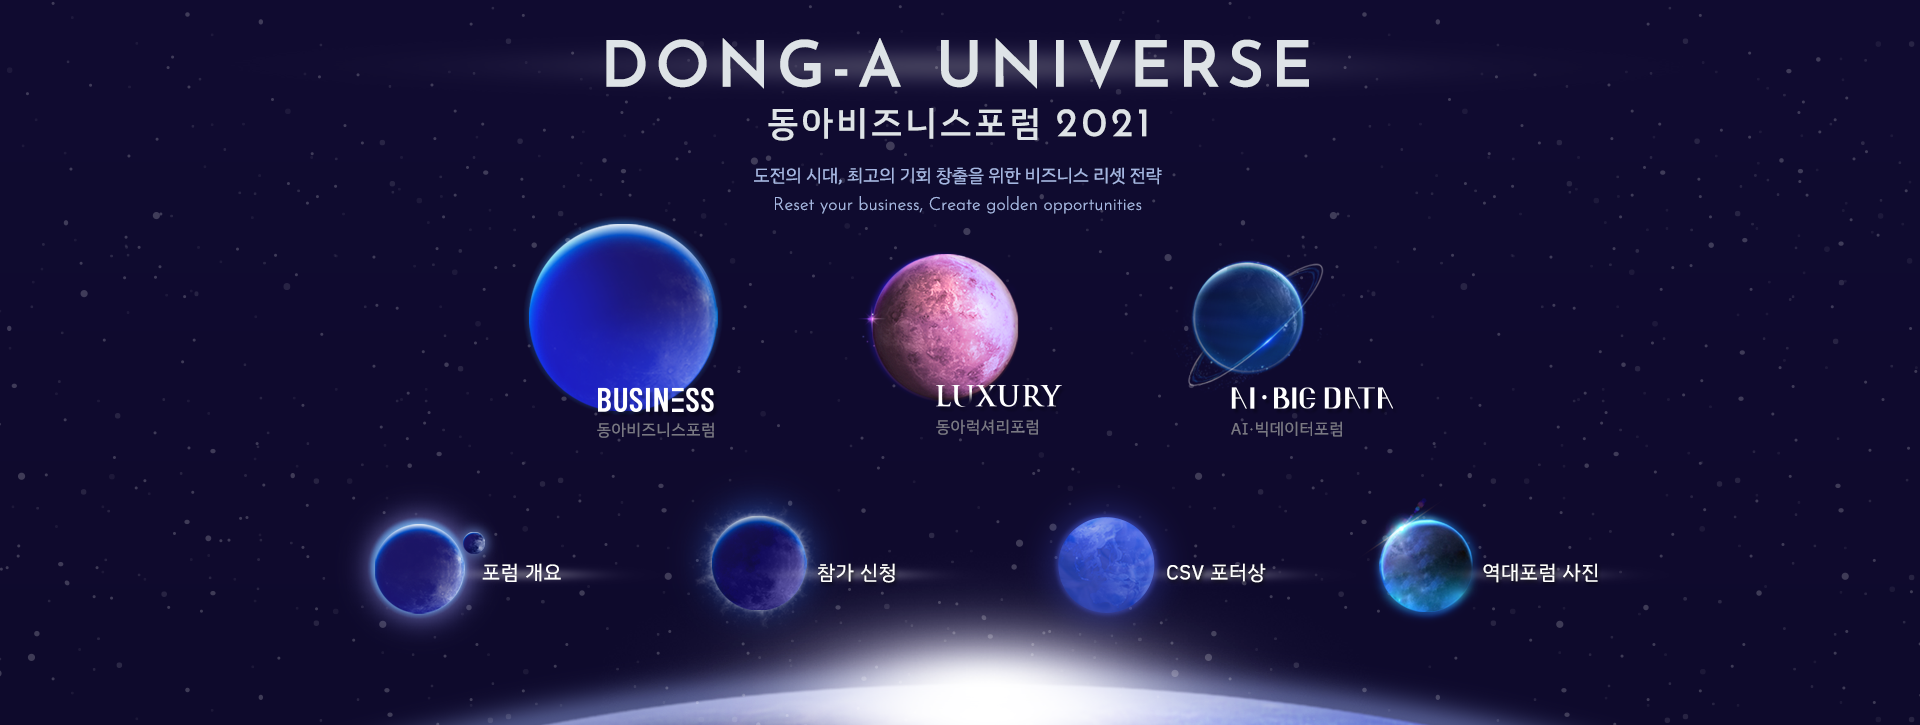 main_visual_2021_dongaunivers